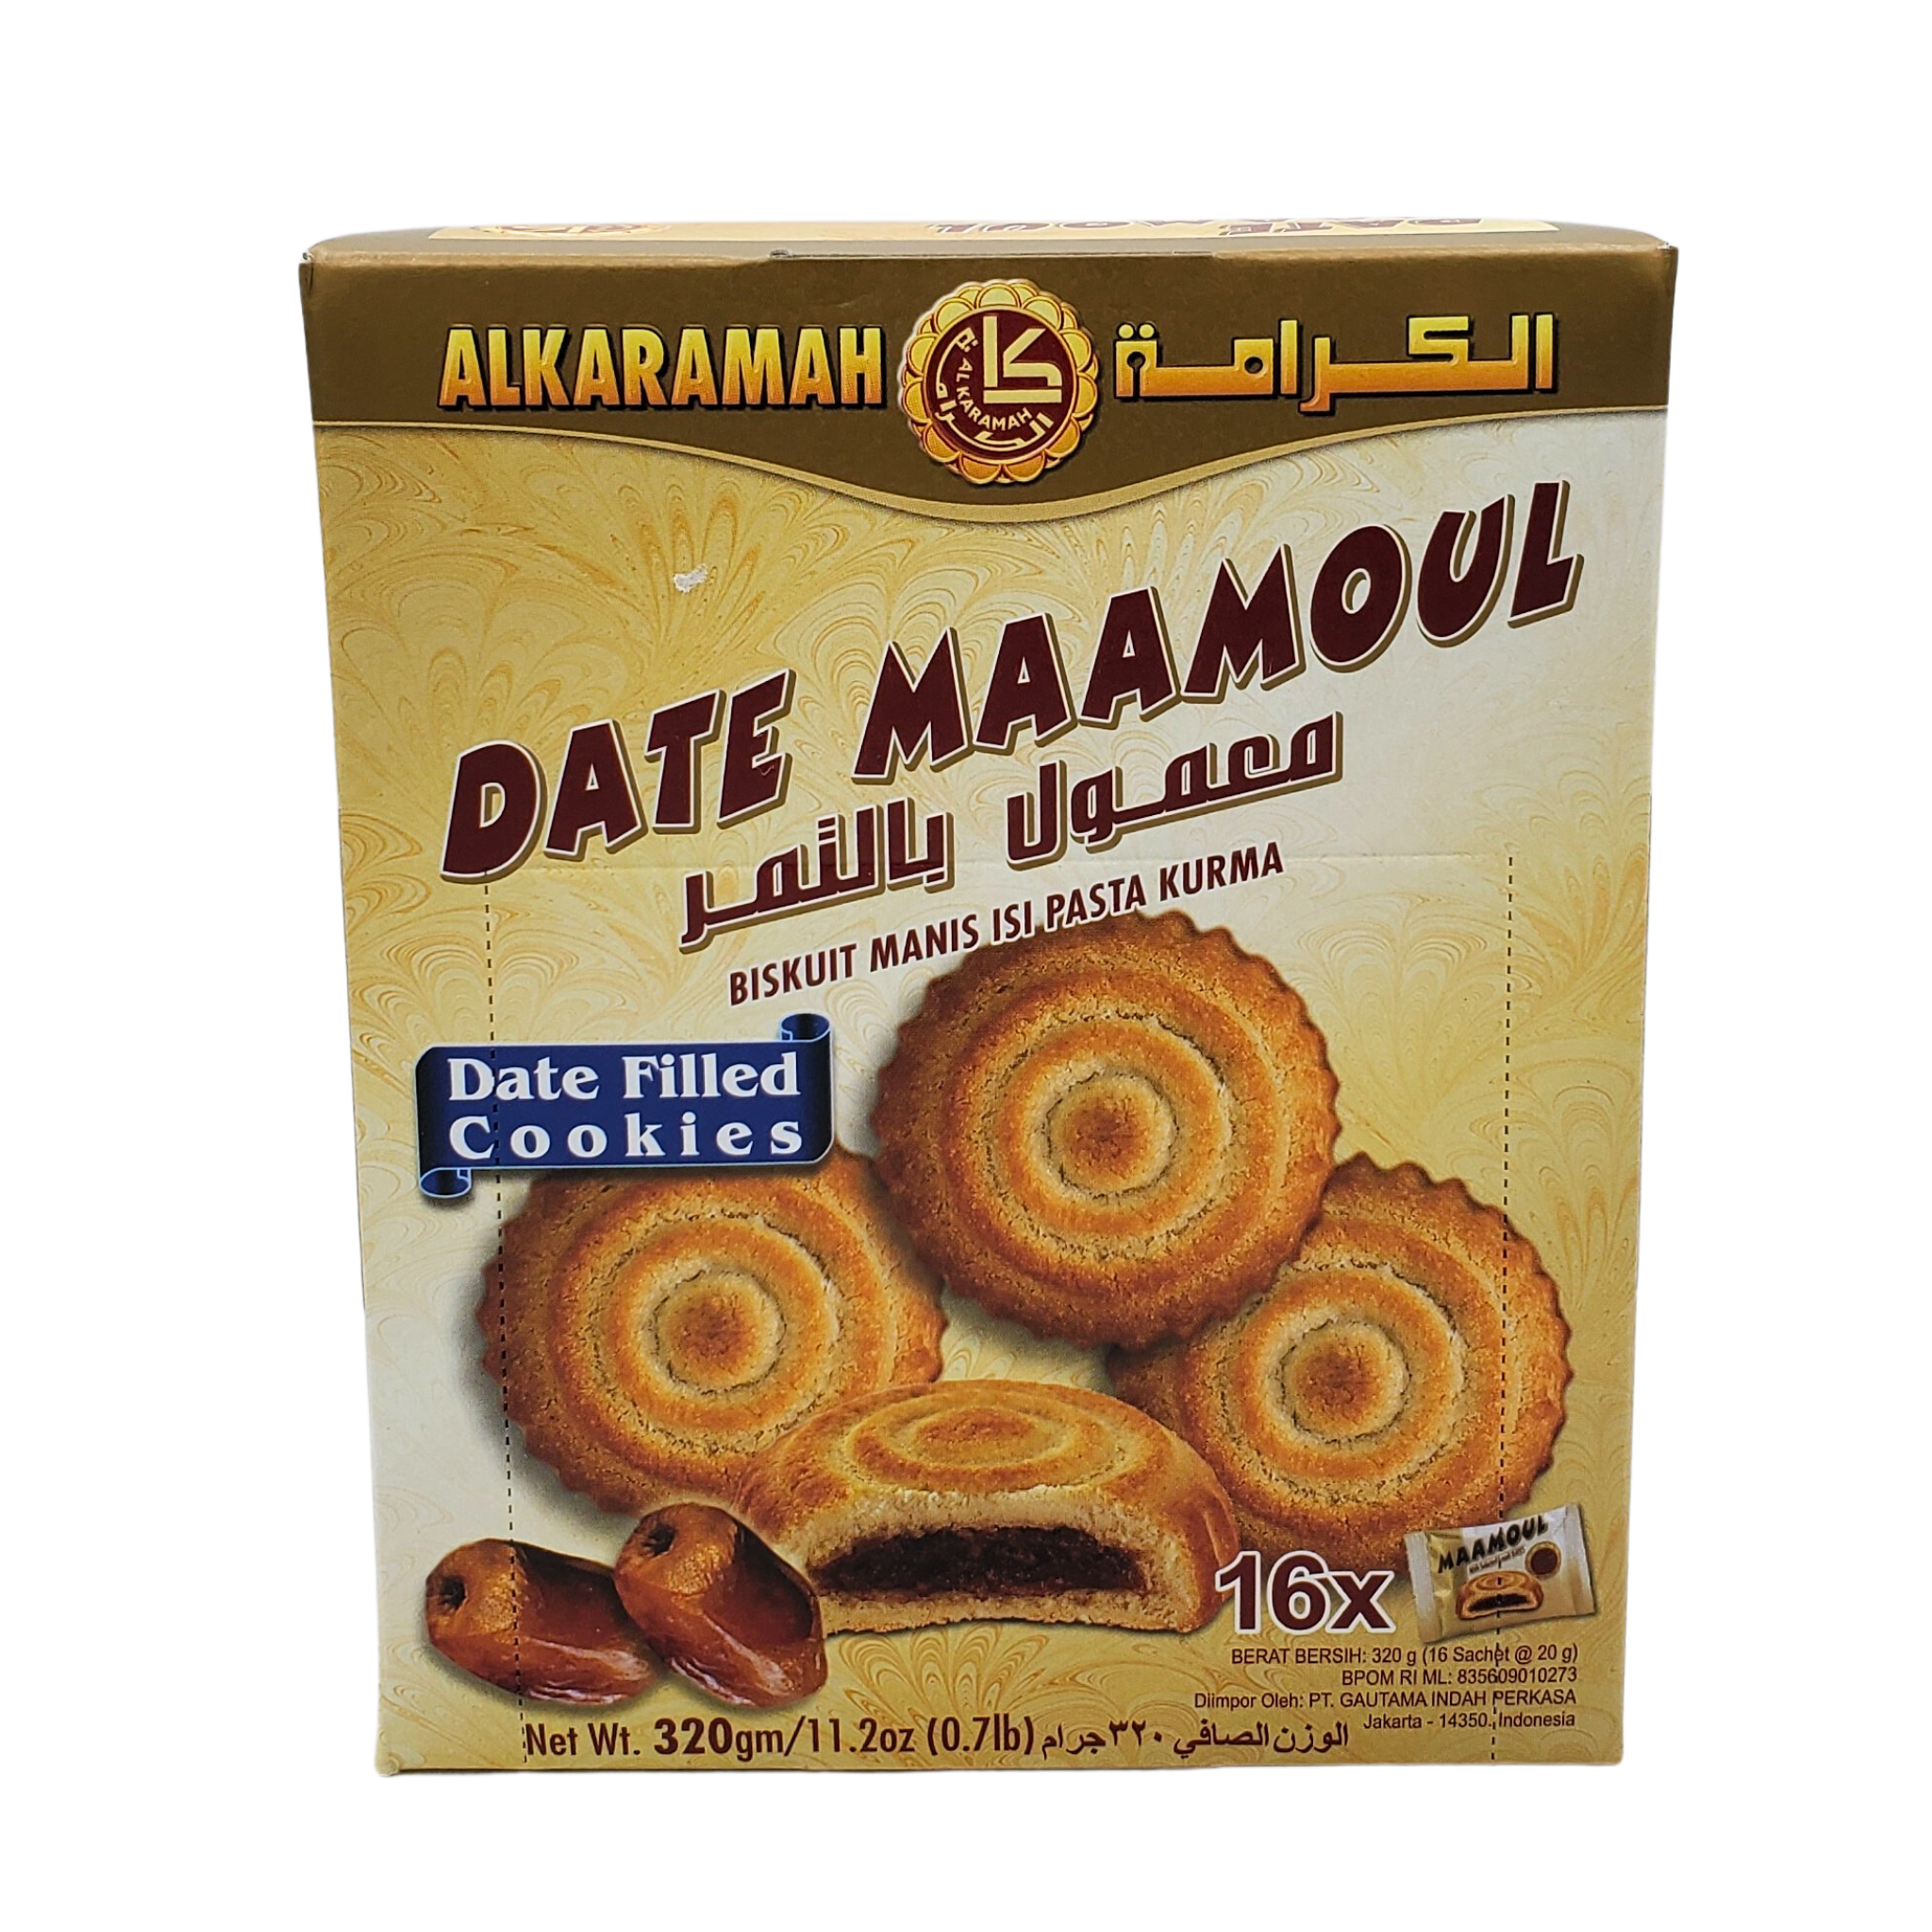 Alkaramah Date Maamoul Date Filled Cookies 12 pcs Net: 320g